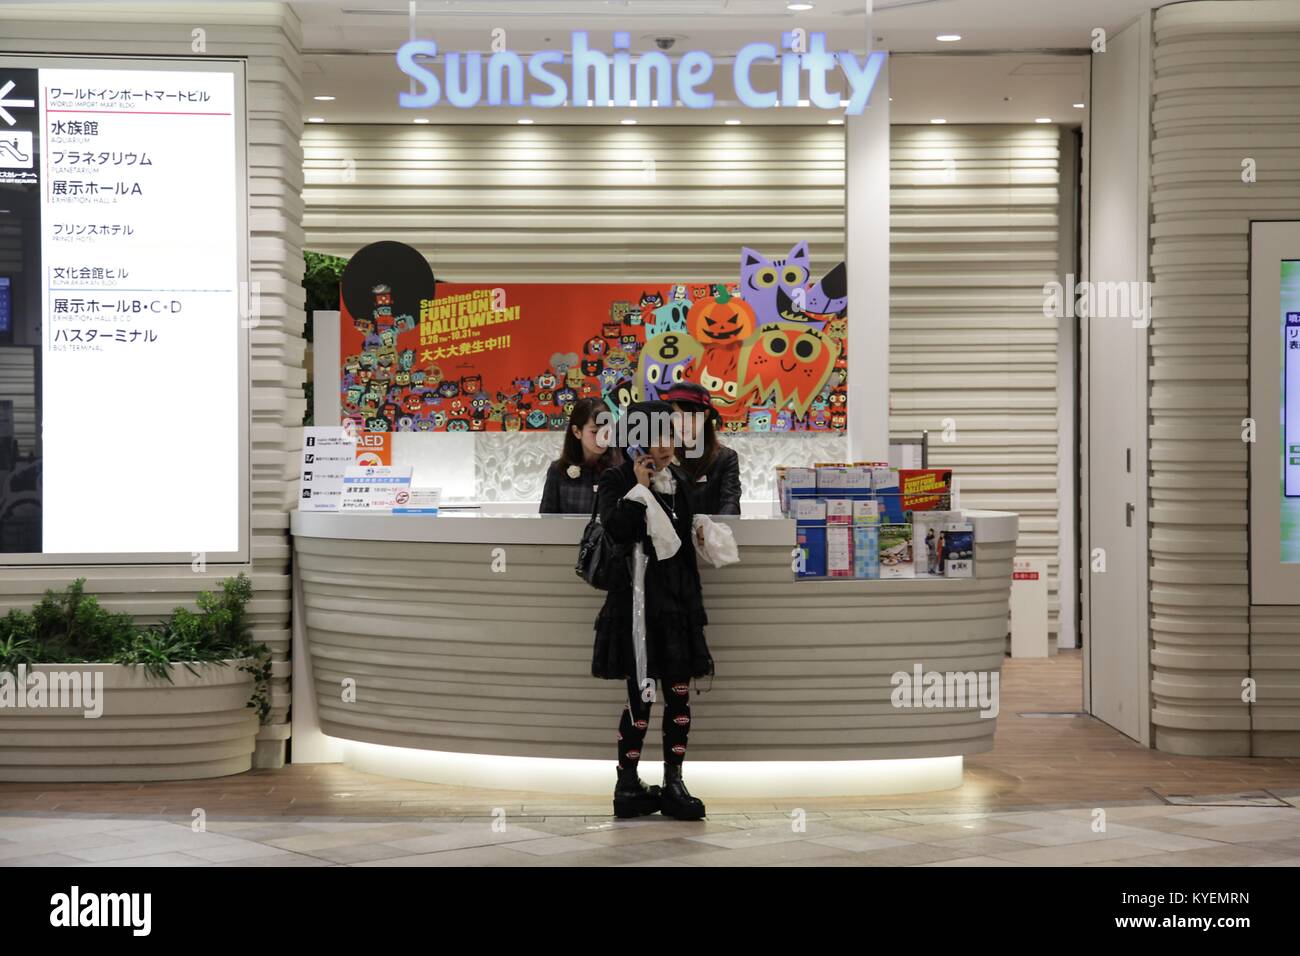 Una donna si trova nei pressi di un banco informazioni ed effettua una chiamata telefonica all'interno di Ikebukuro Sunshine City, un complesso di shopping nel reparto di Ikebukuro, Toshima di Tokyo, Giappone, 16 ottobre 2017. () Foto Stock